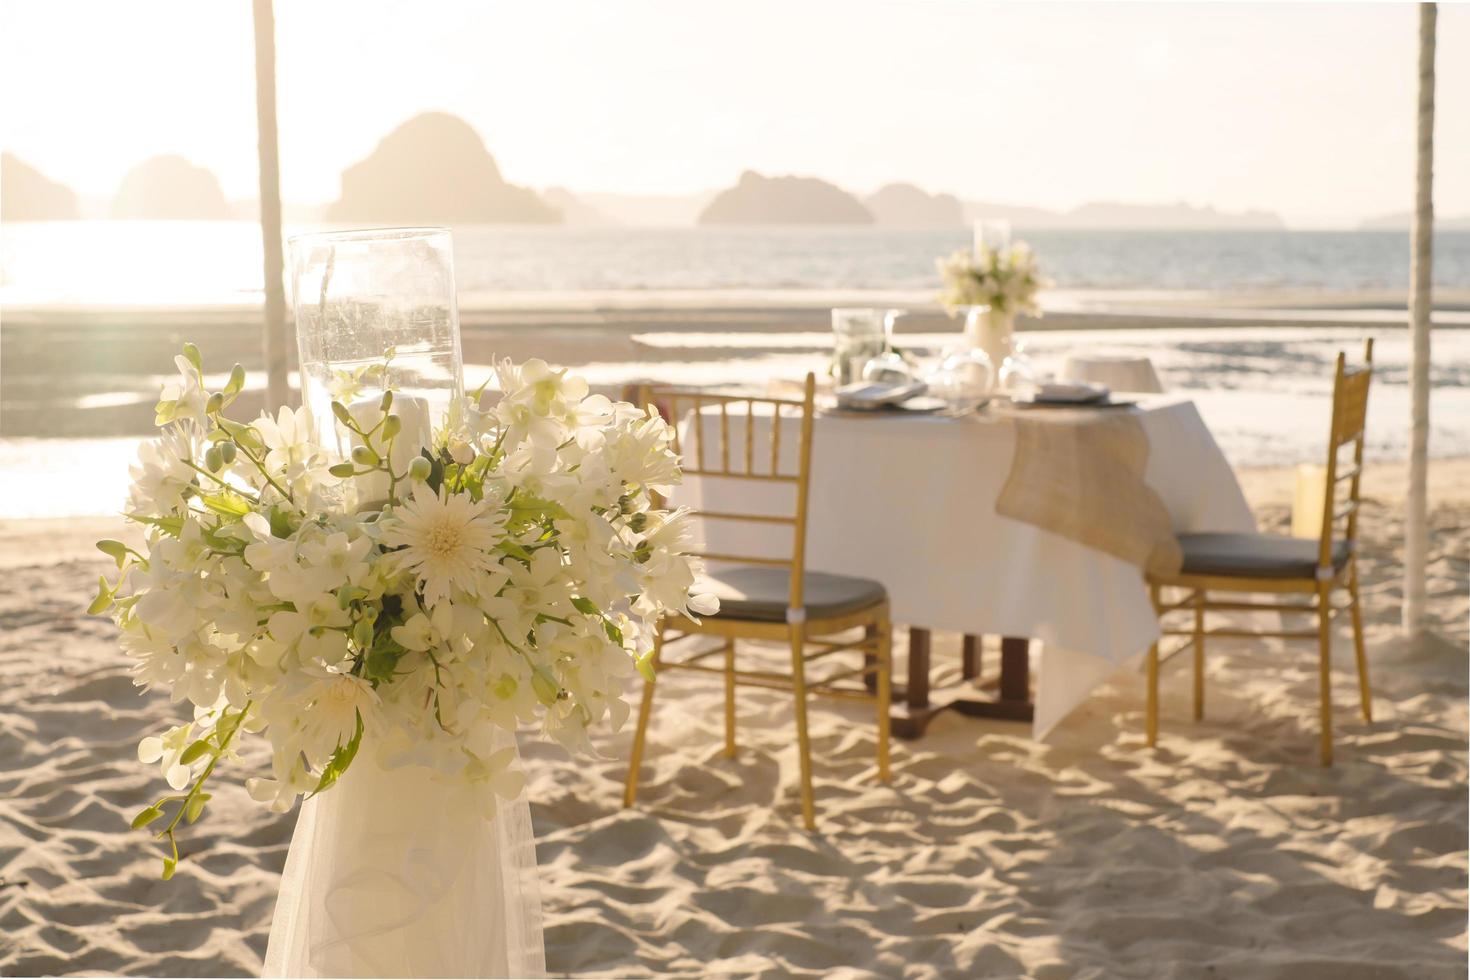 Schöner Tisch für ein romantisches Abendessen am Strand mit Blumen und Kerzen. Catering für ein romantisches Date, eine Hochzeit oder einen Flitterwochenhintergrund. Abendessen am Strand bei Sonnenuntergang. ausgewählten Fokus. foto